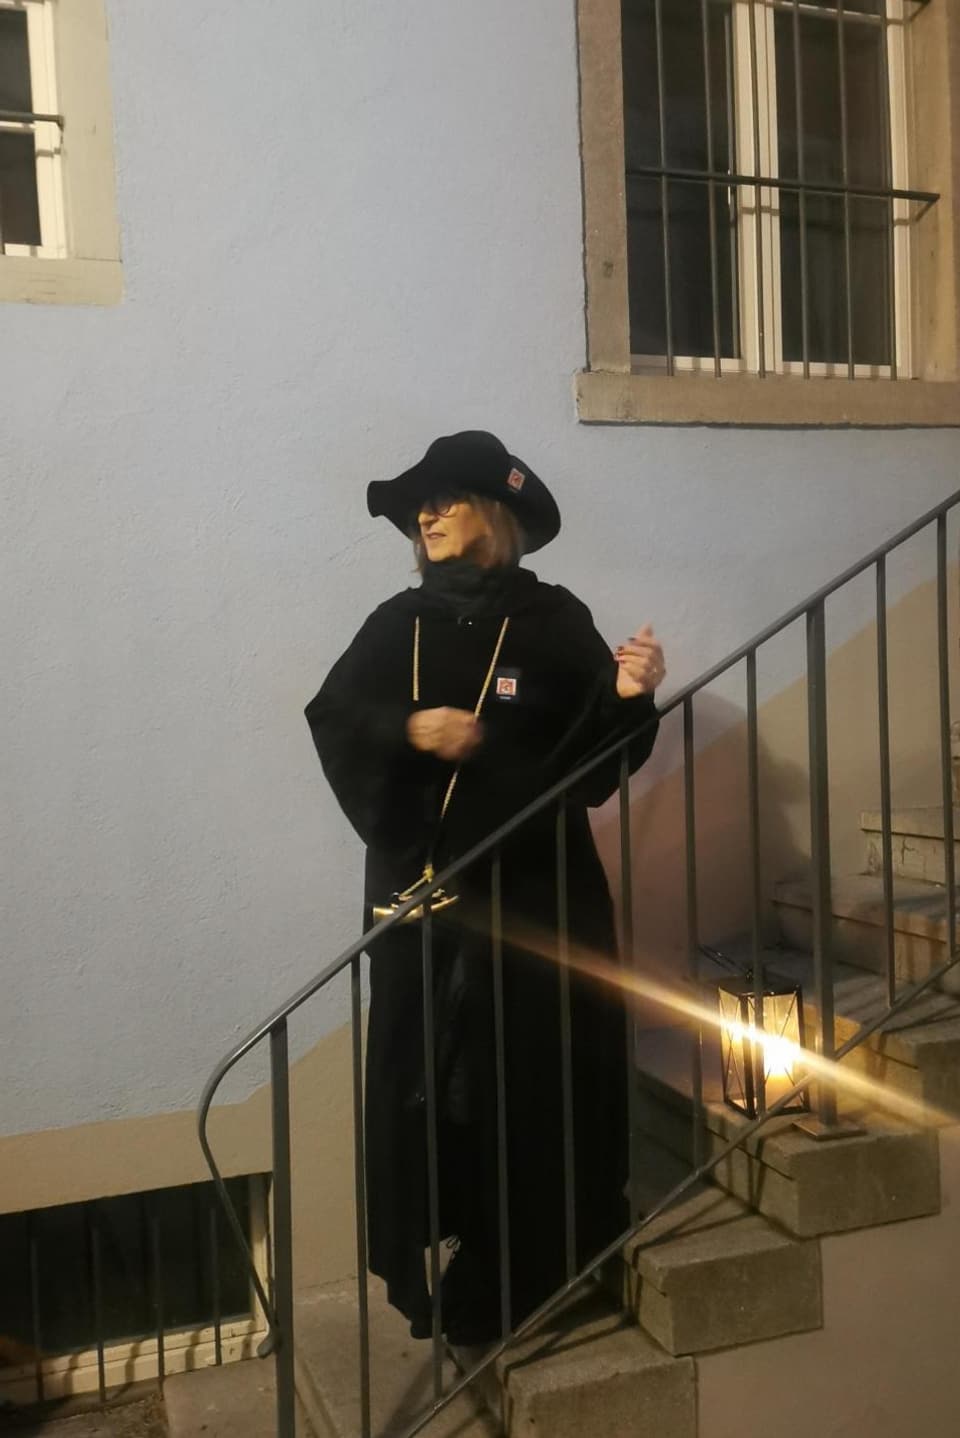 Eine Frau in langem schwarzen Mantel und einem schwarzen Hut, steht mit einer Laterne auf einer Treppe.